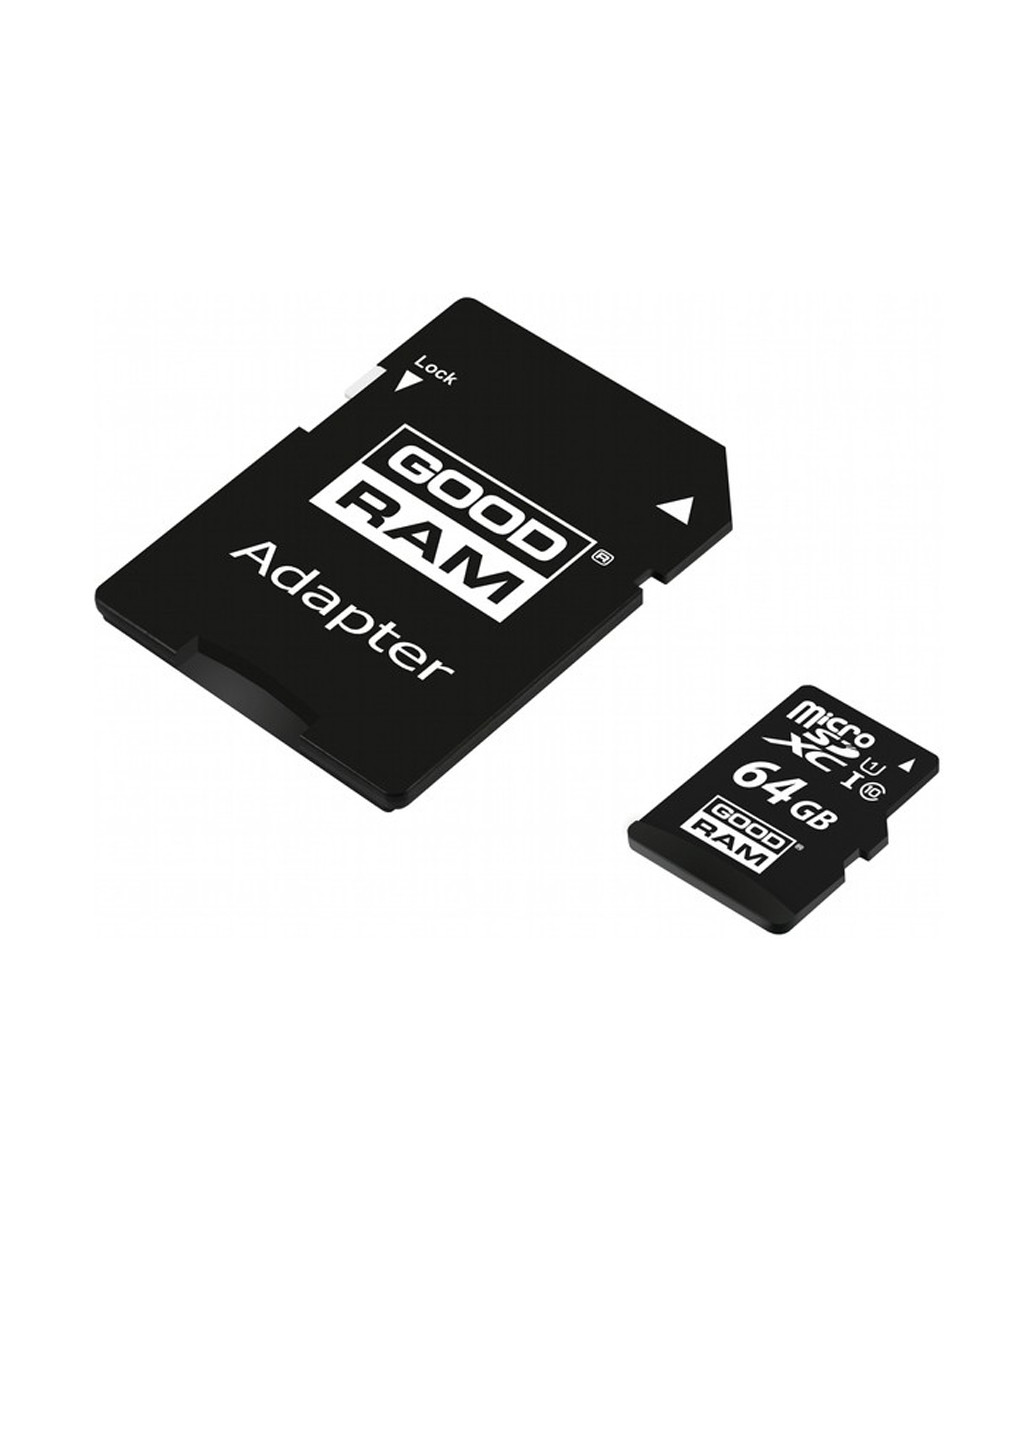 Карта памяти microSDHC 64GB C10 UHS-I + SD-adapter (M1AA-0640R12) Goodram карта памяти goodram microsdhc 64gb c10 uhs-i + sd-adapter (m1aa-0640r12) (135316879)